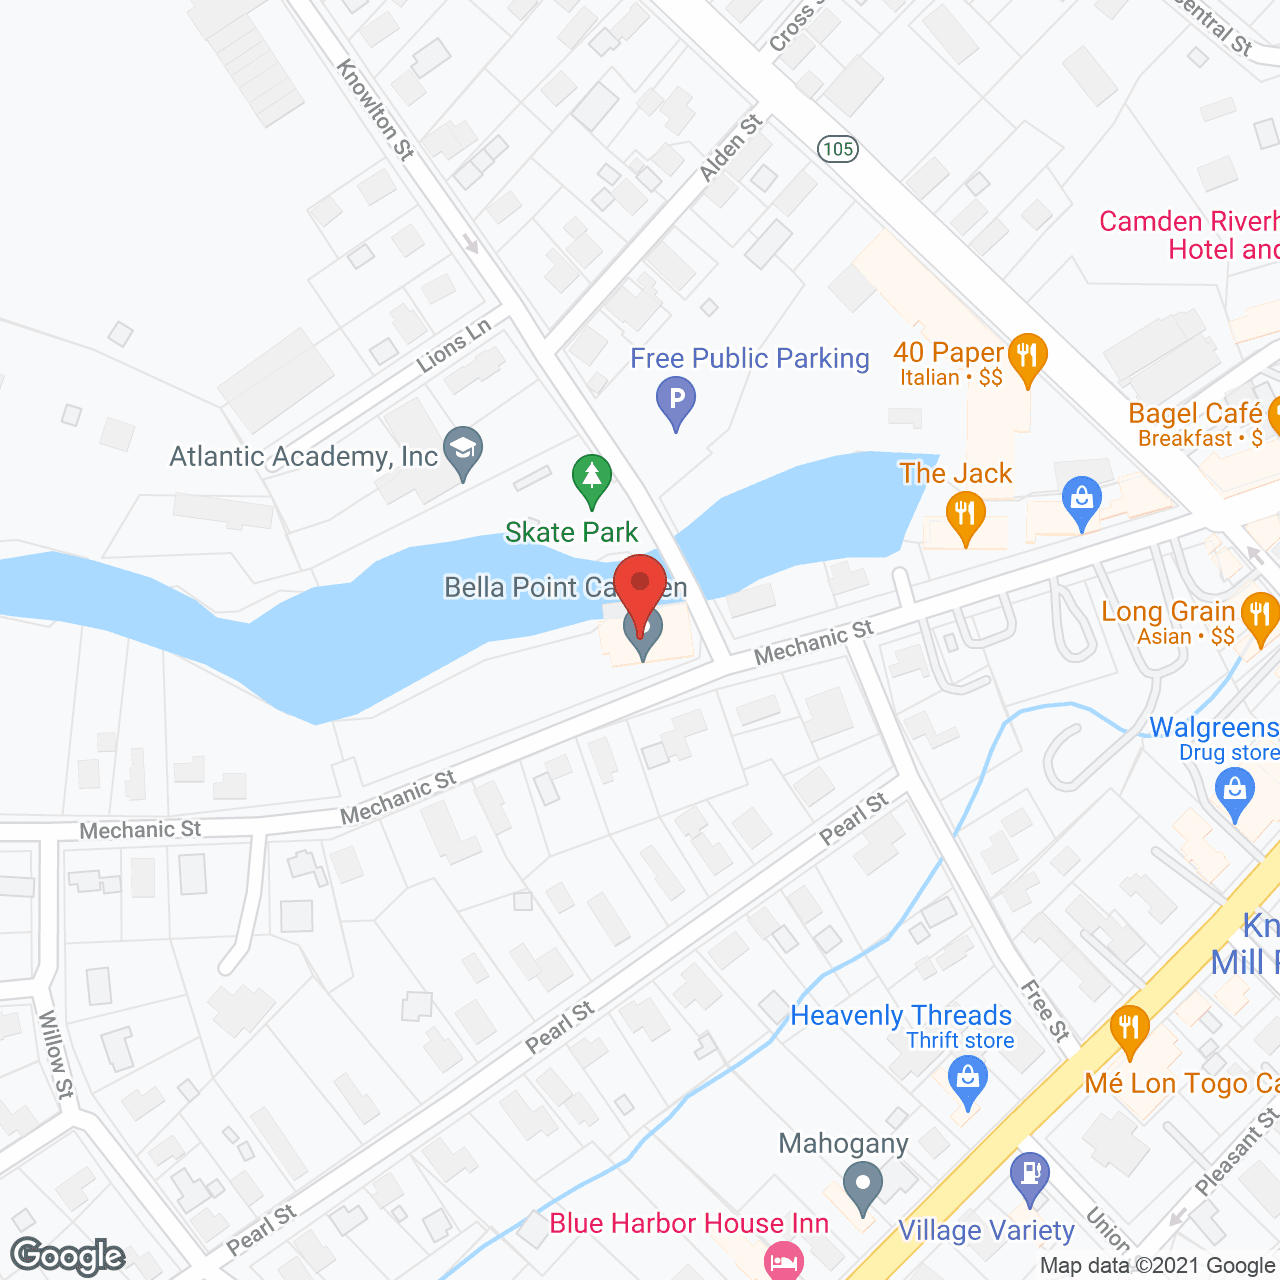 Bella Point Camden in google map